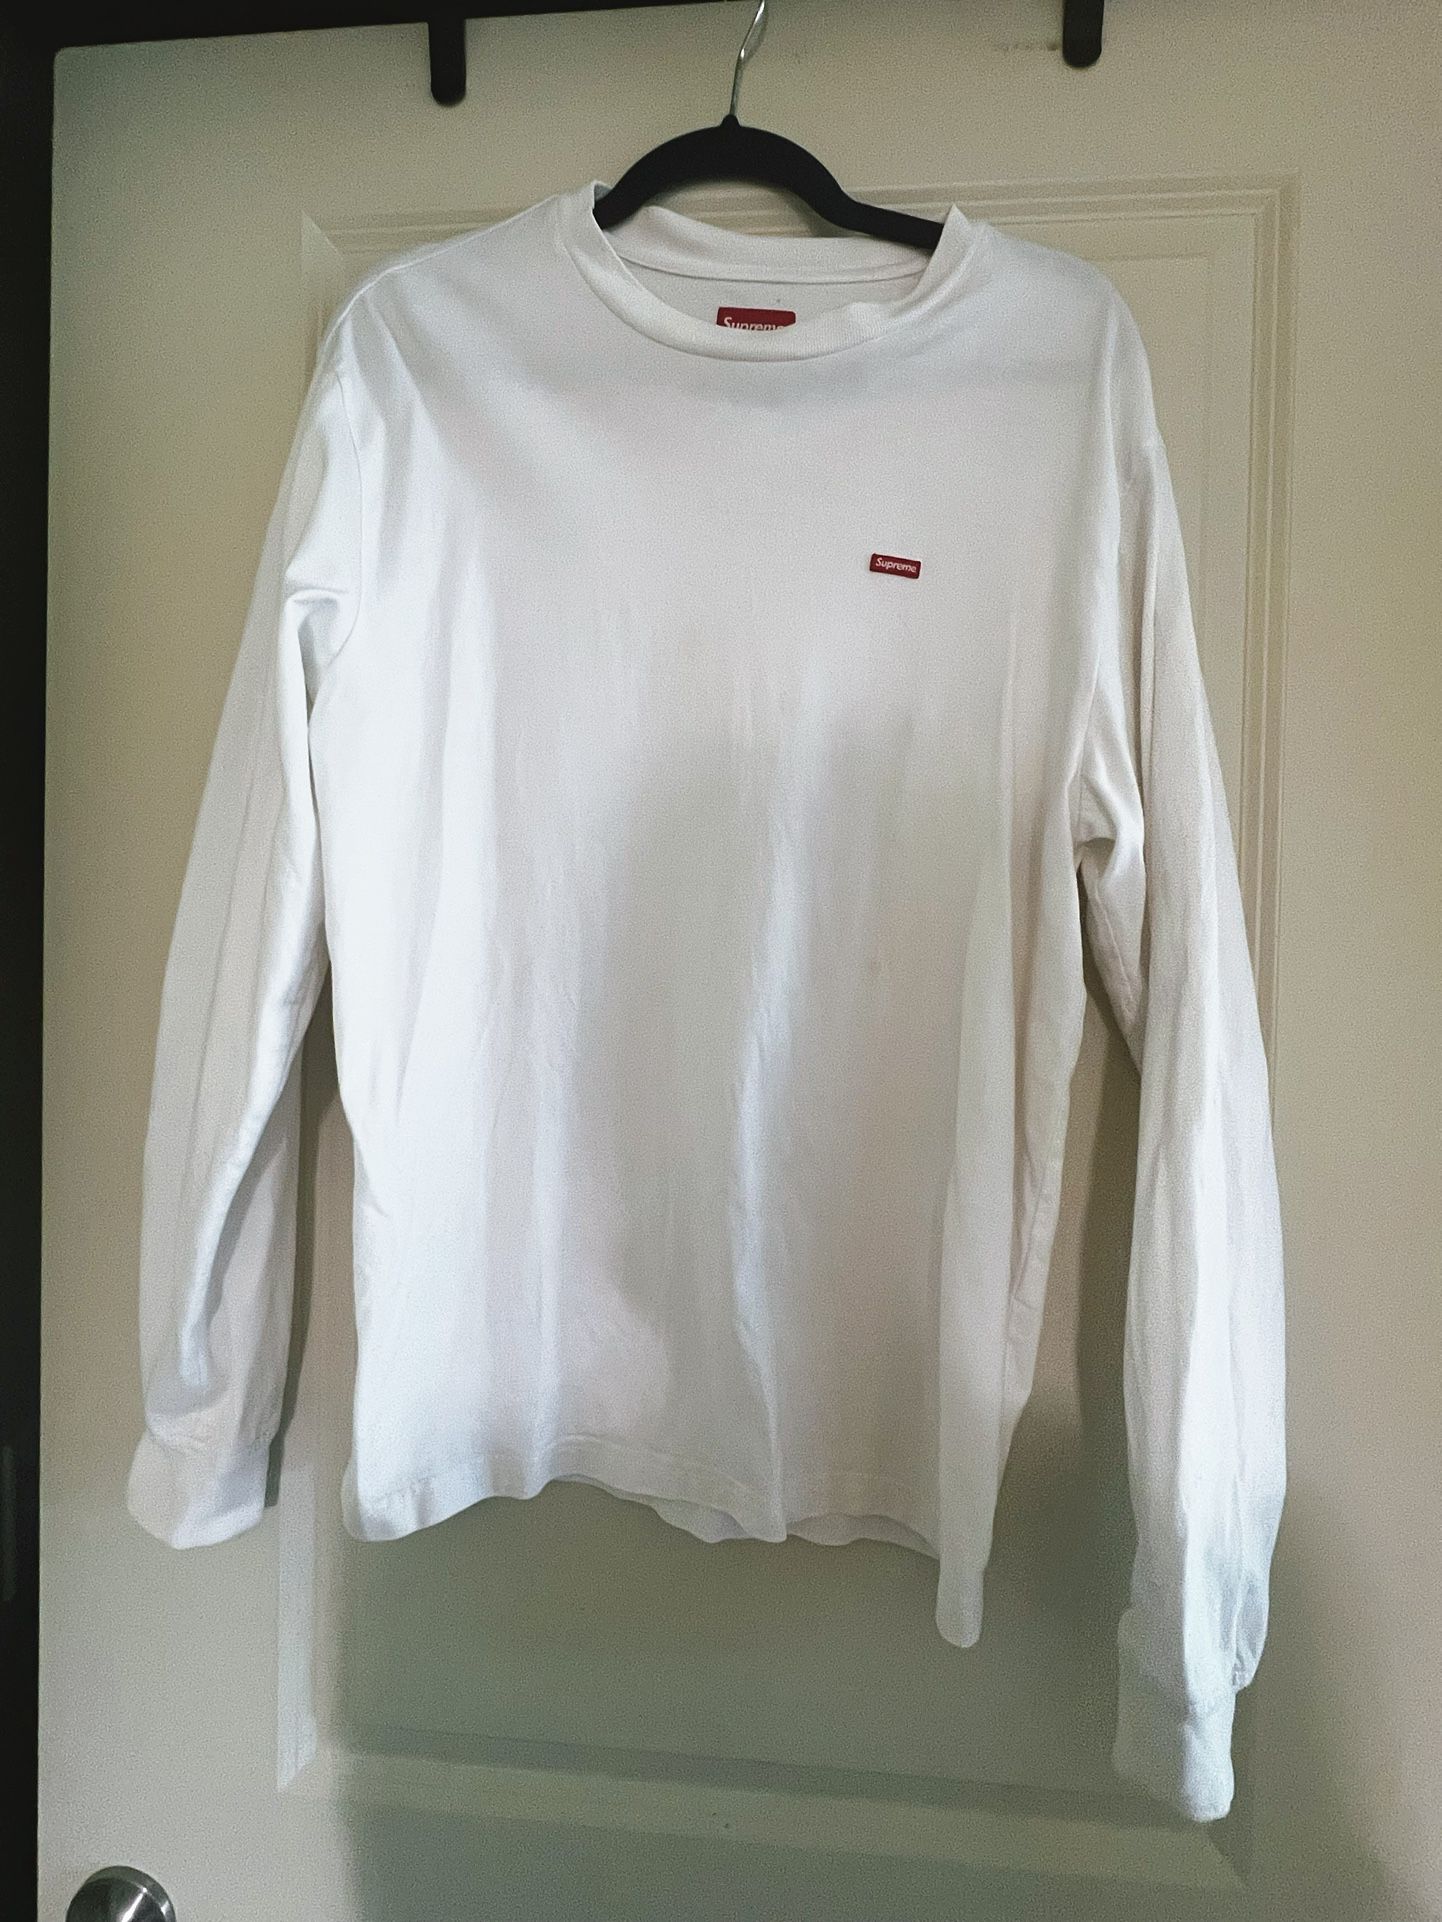 Supreme sweatshirt - size S